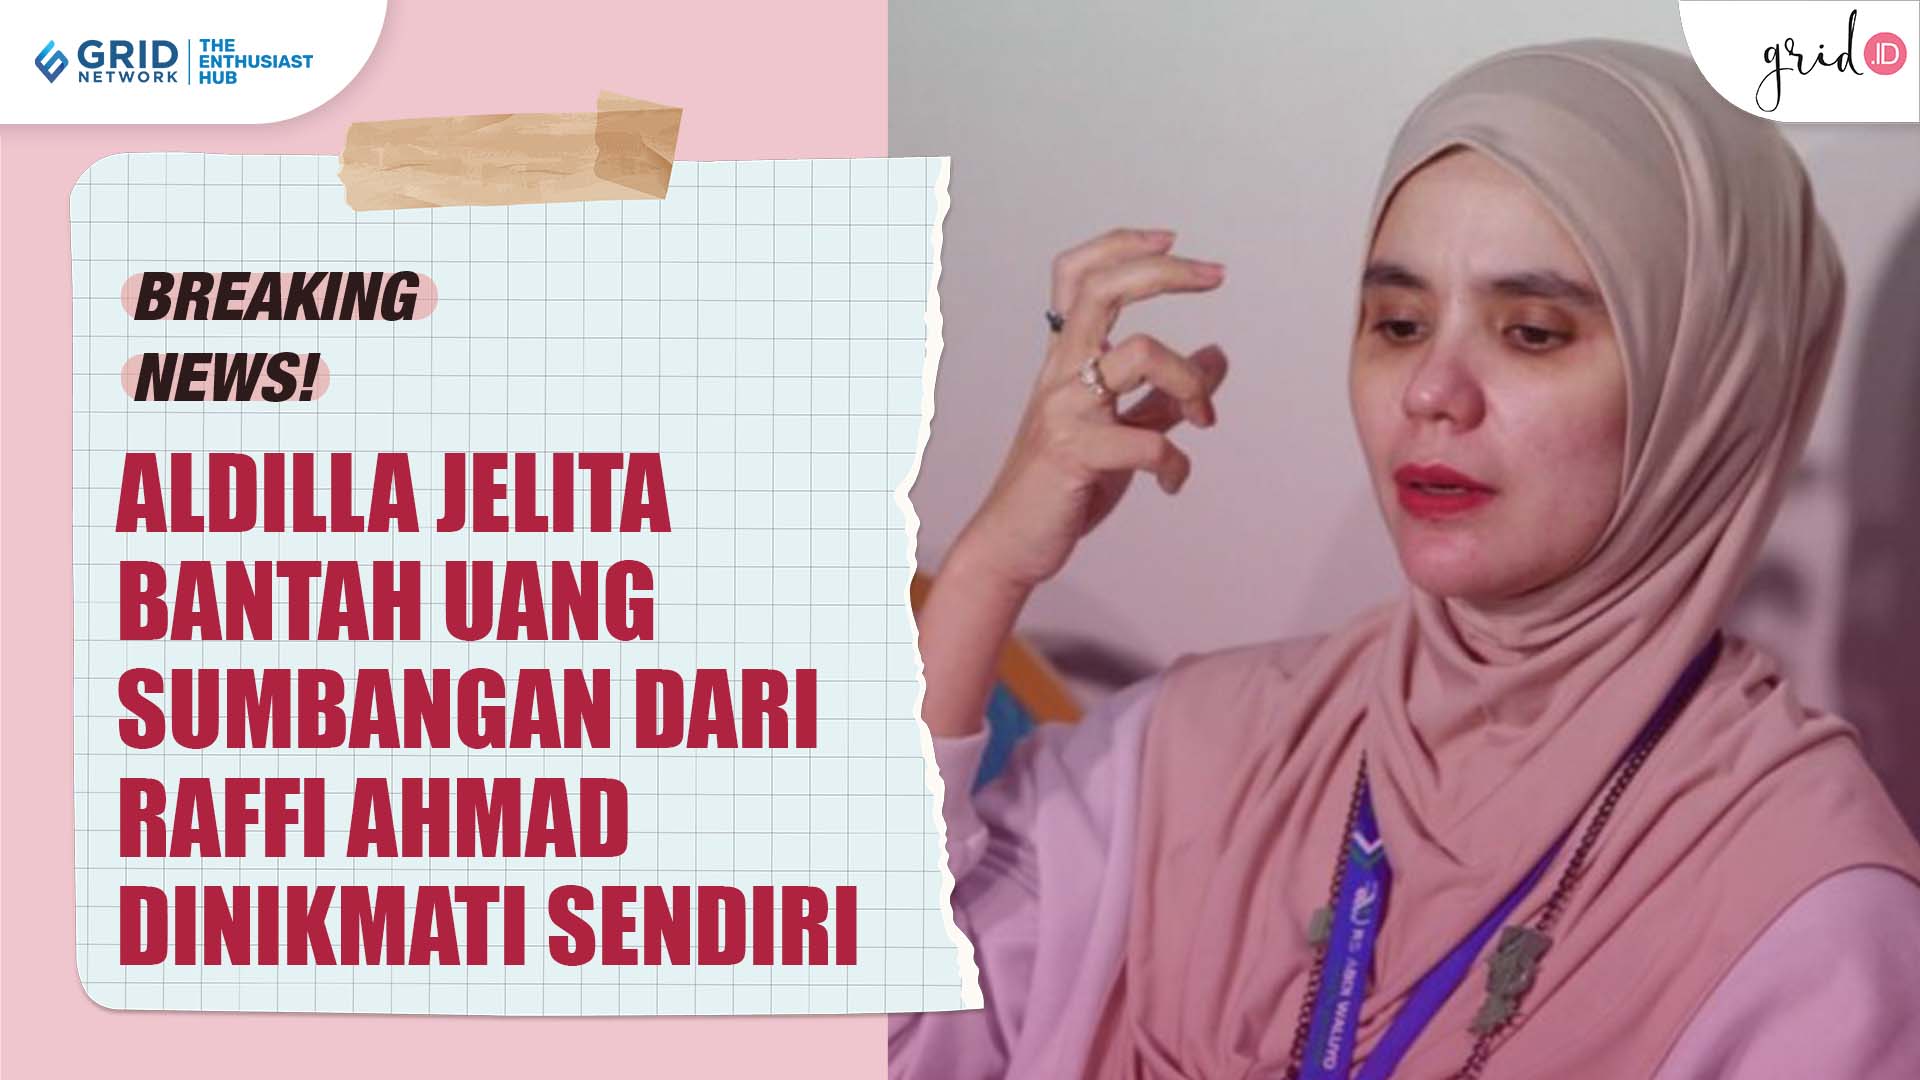 Aldilla Jelita Bantah Sudah Menikmati Sendiri Uang Sumbangan Dari Raffi Ahmad